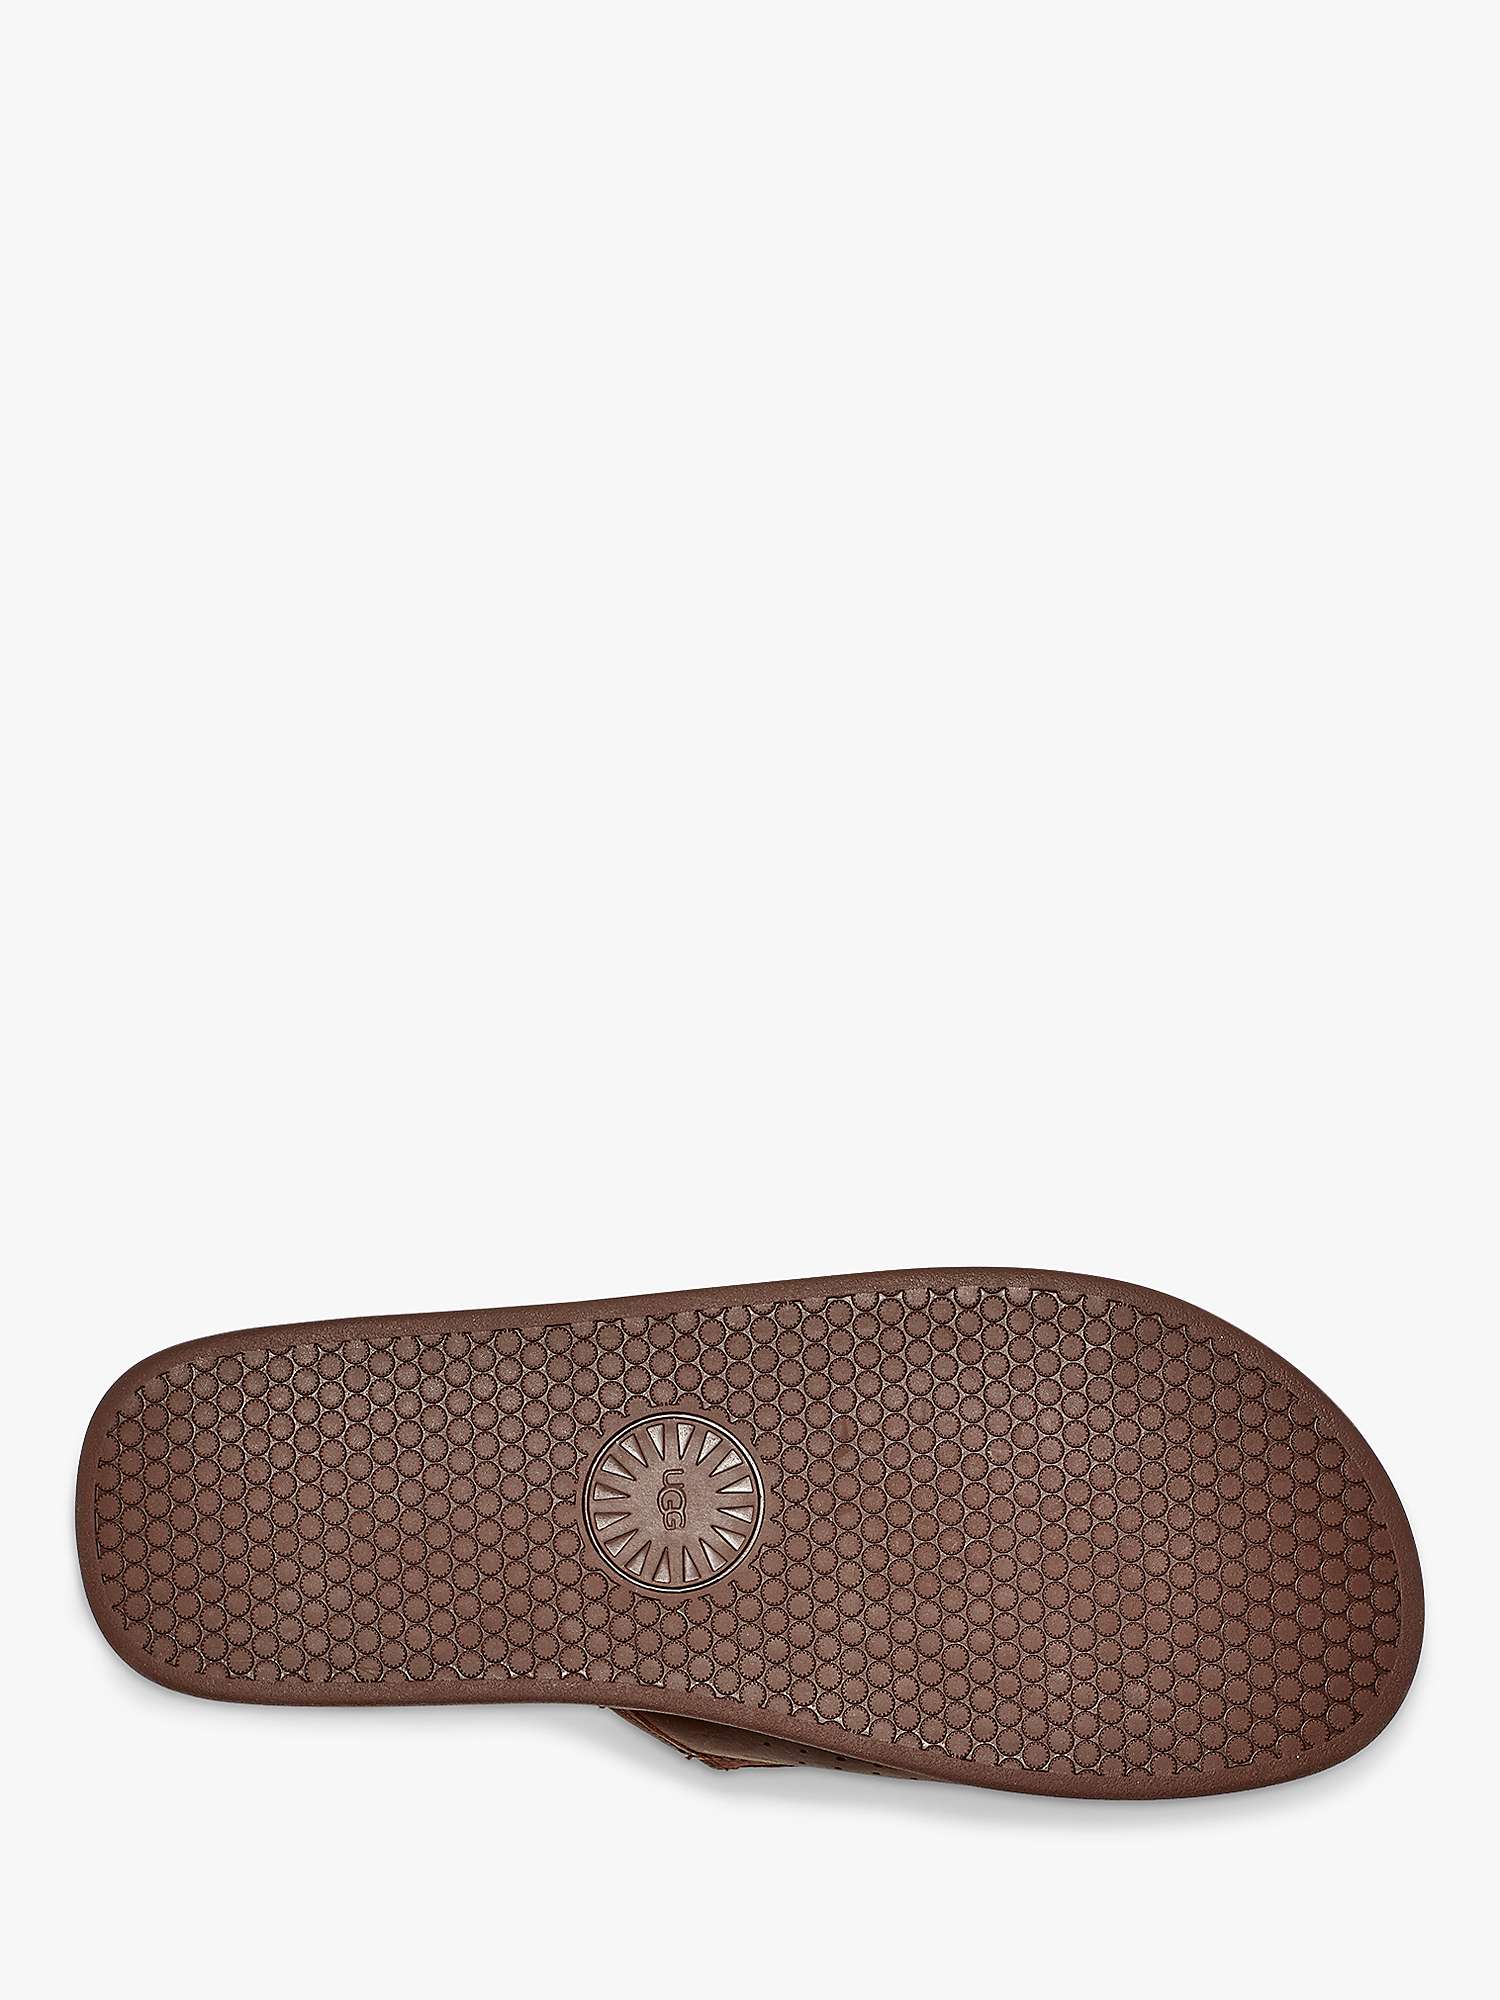 Buy UGG Seaside Leather Slider Sandals, Luggage Online at johnlewis.com